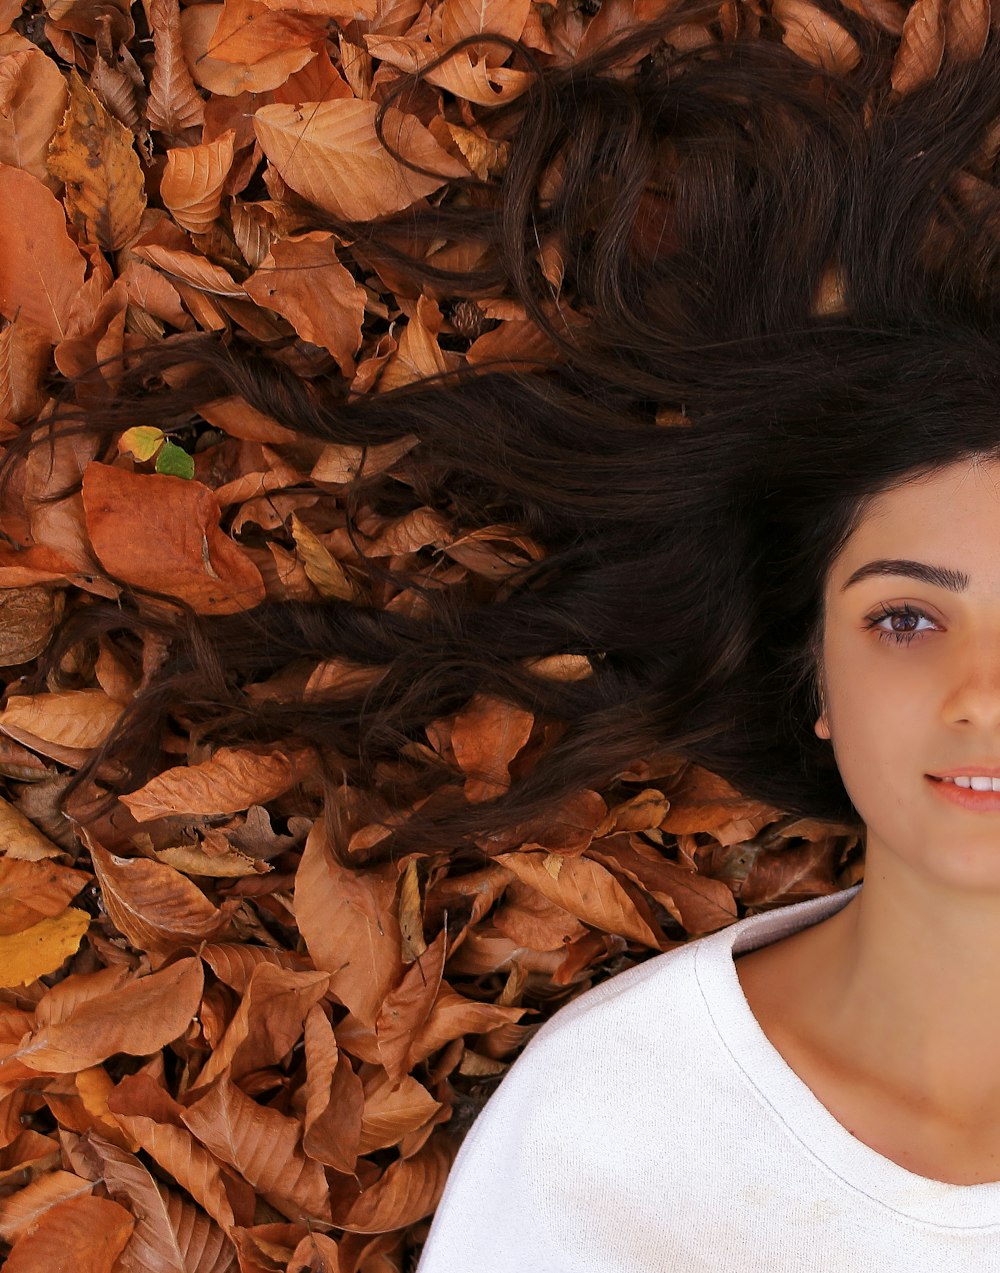 mujer acostada en el suelo con hojas marrones